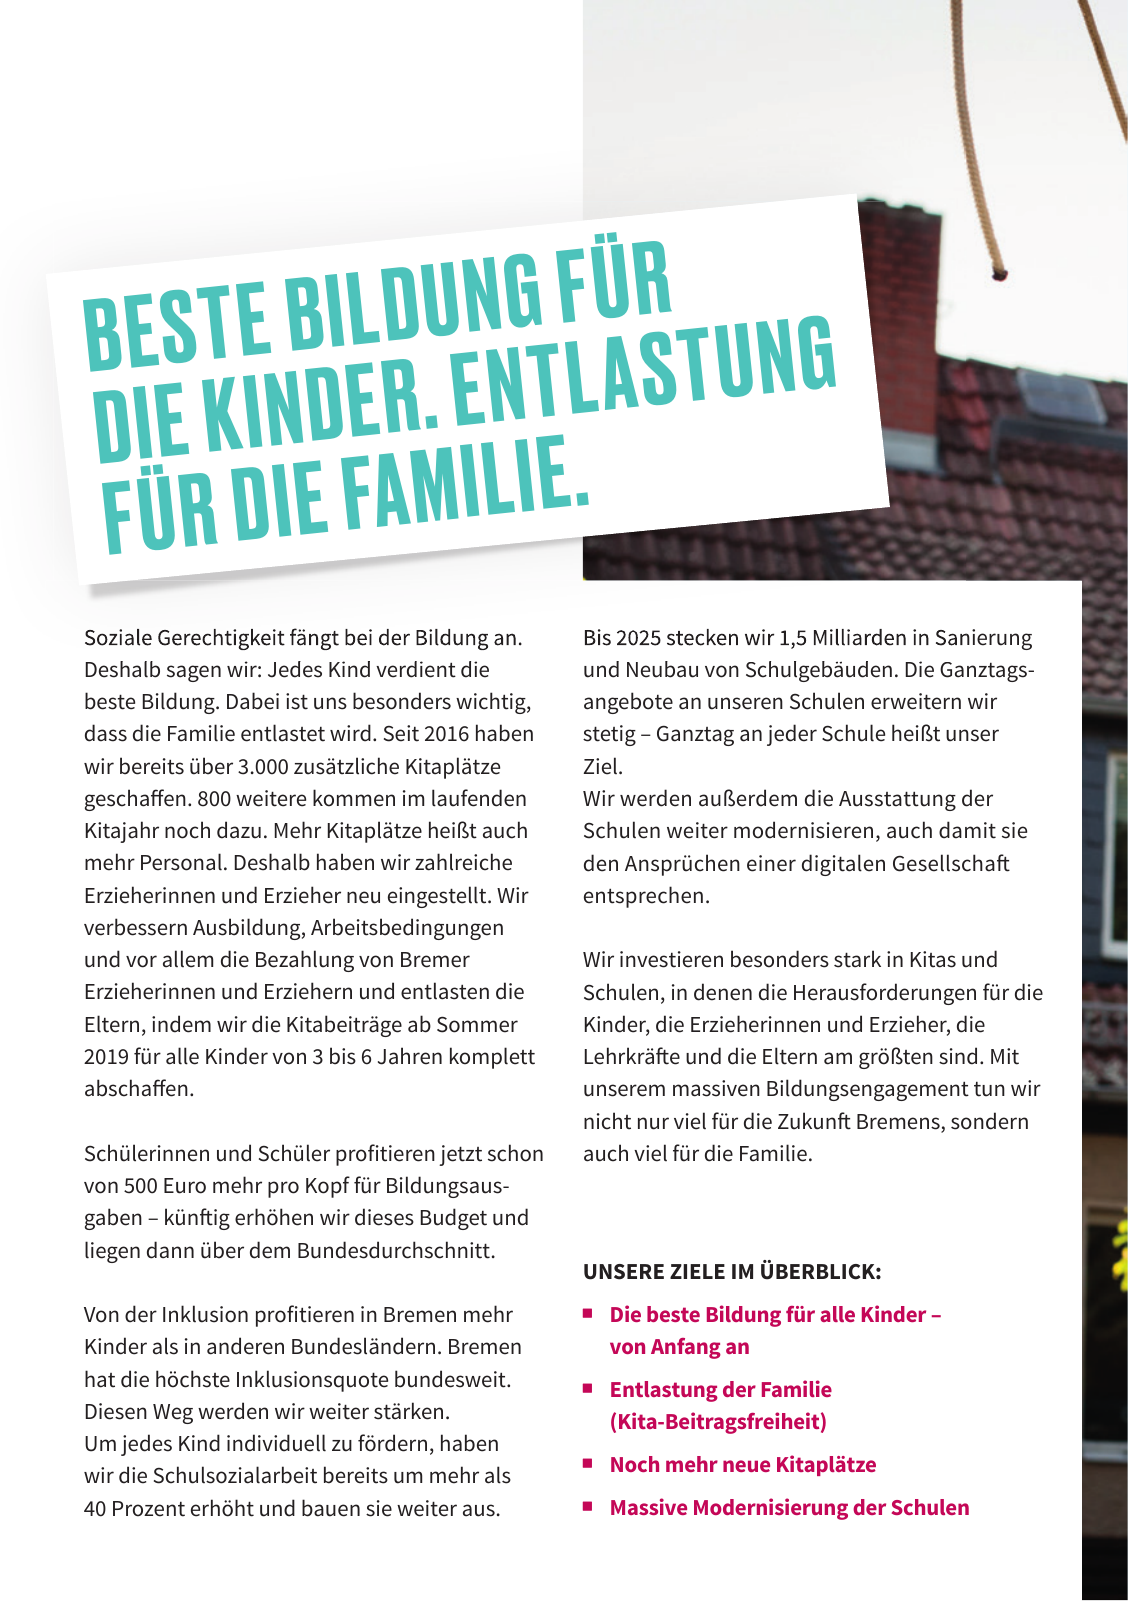 Vorschau SPD Kurzwahlprogramm - April 2019 Seite 6